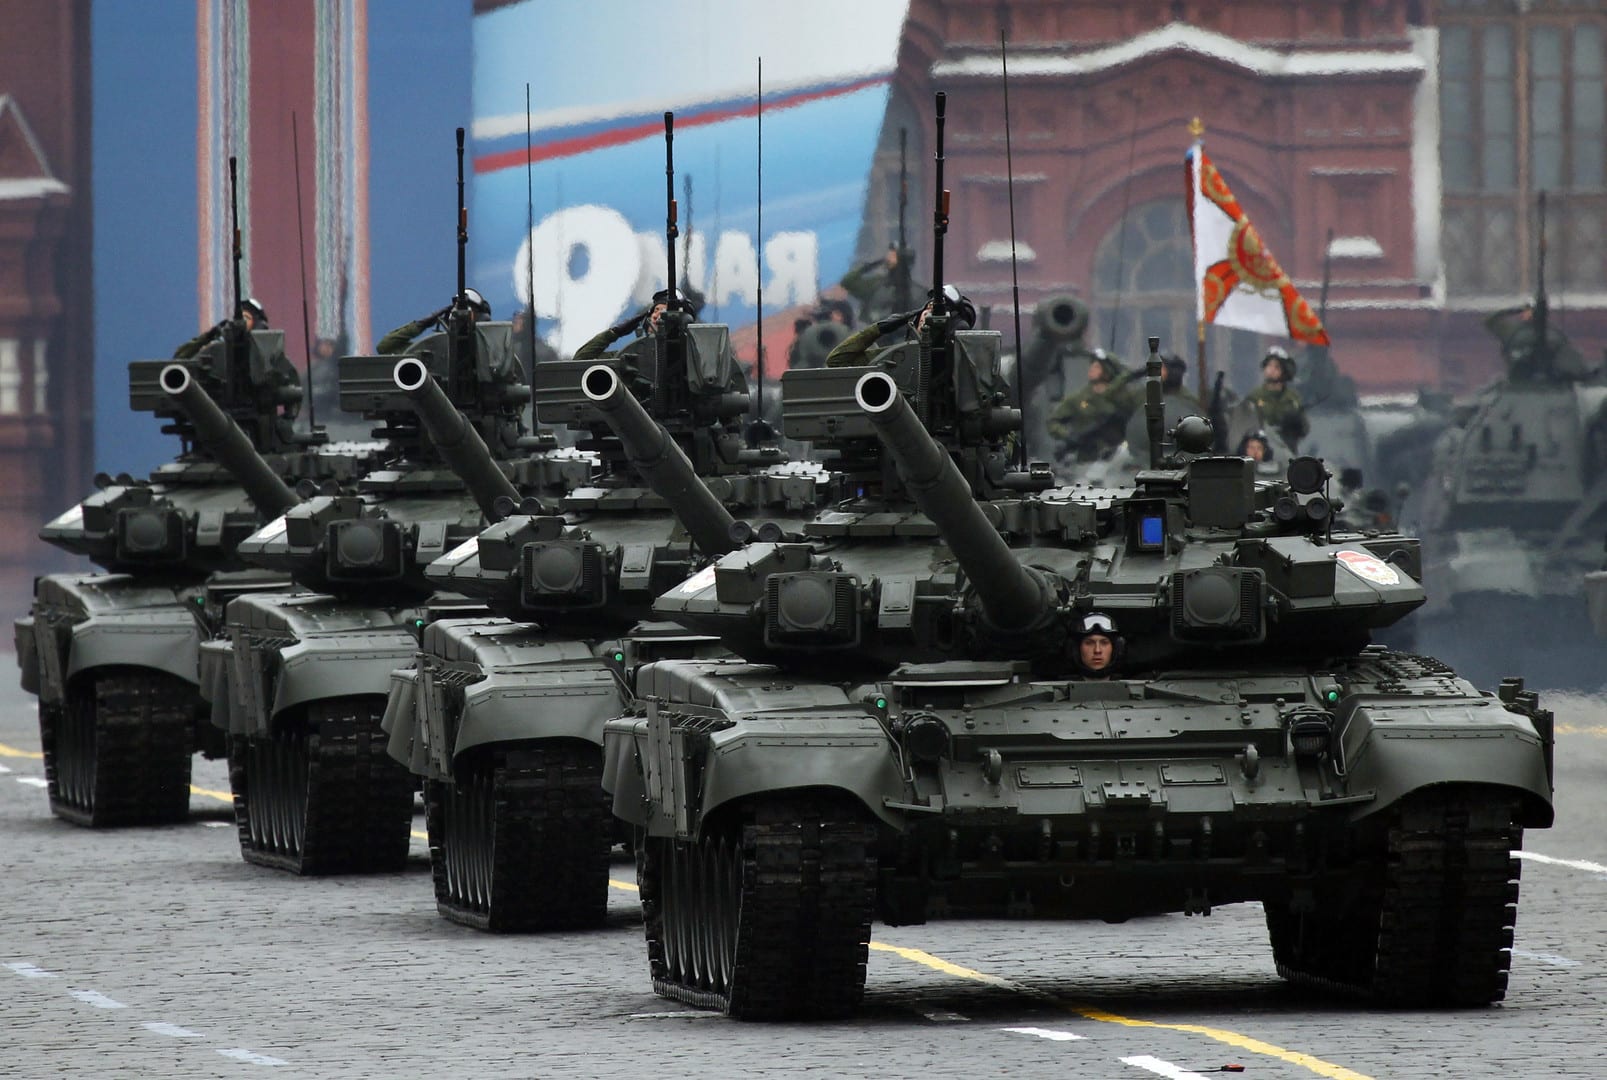 روسيا تروج لبيع أسلحة متطورة لتعويض خسائر قطاع النفط